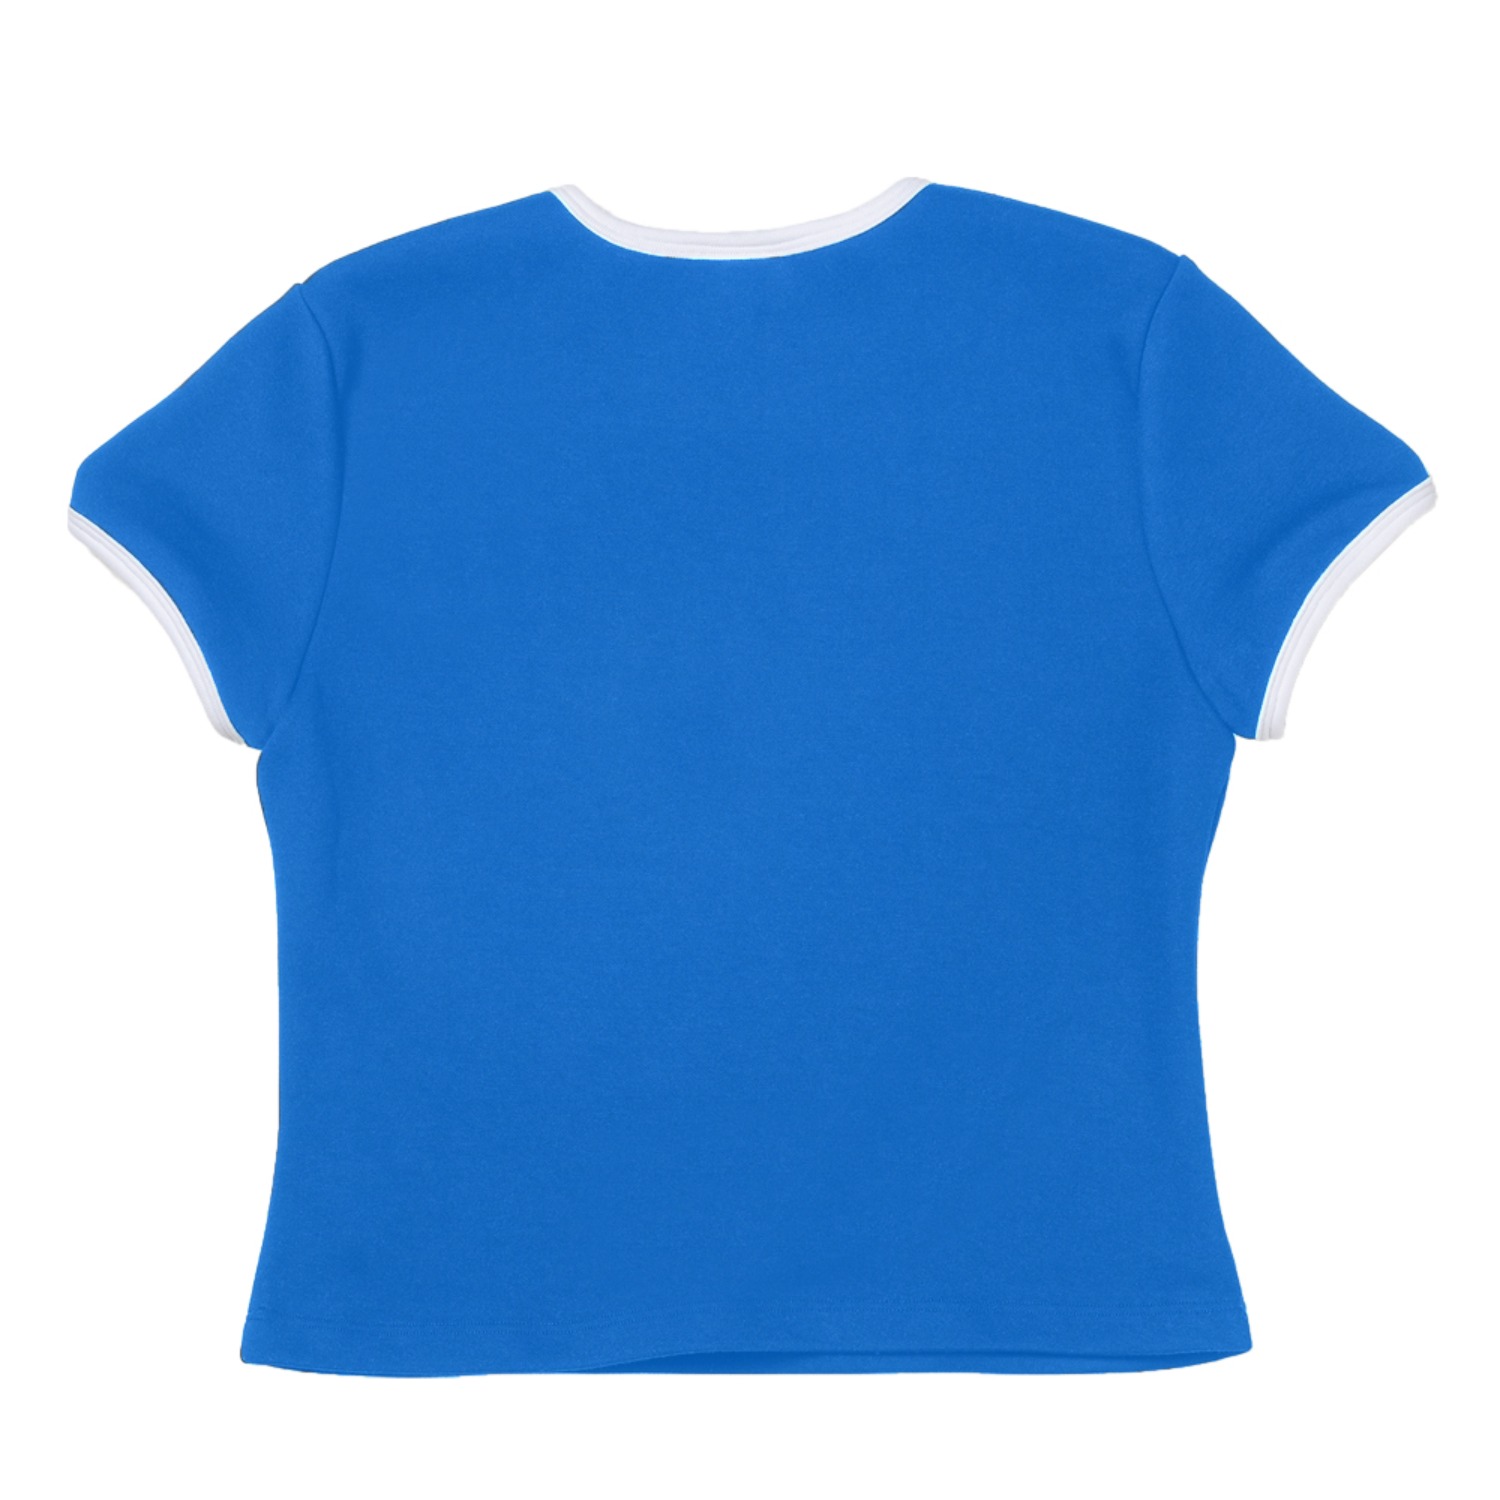 꽃 크롭 반팔티 블루Flower Short Sleeve Crop T-sirts(Blue)